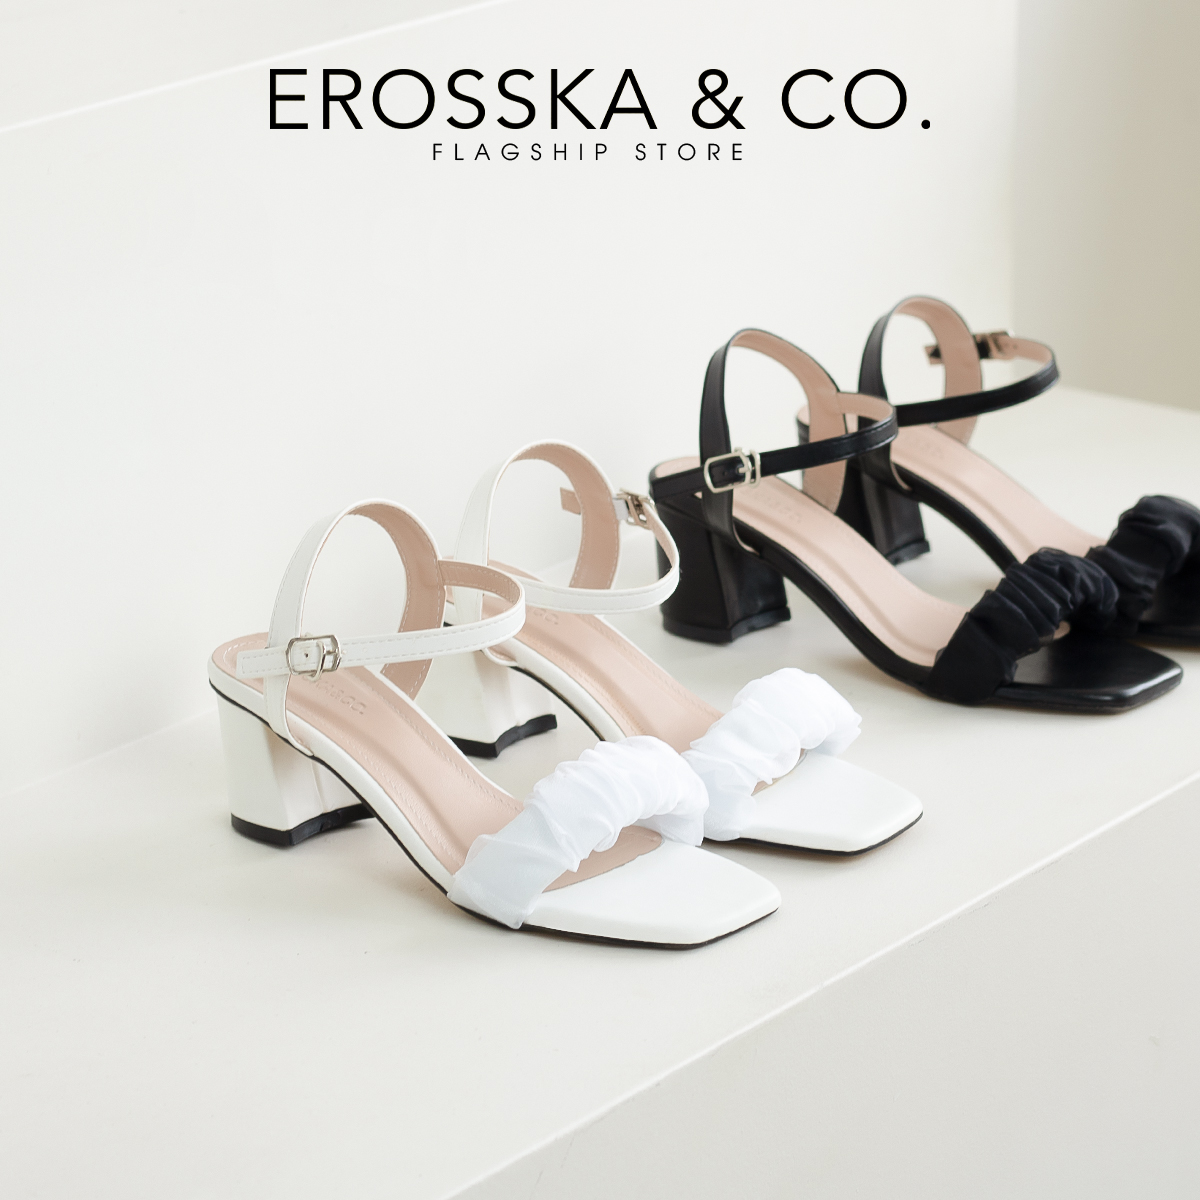 Erosska - Giày sandal cao gót đi học quai nhún cao 5cm màu đen - EB047